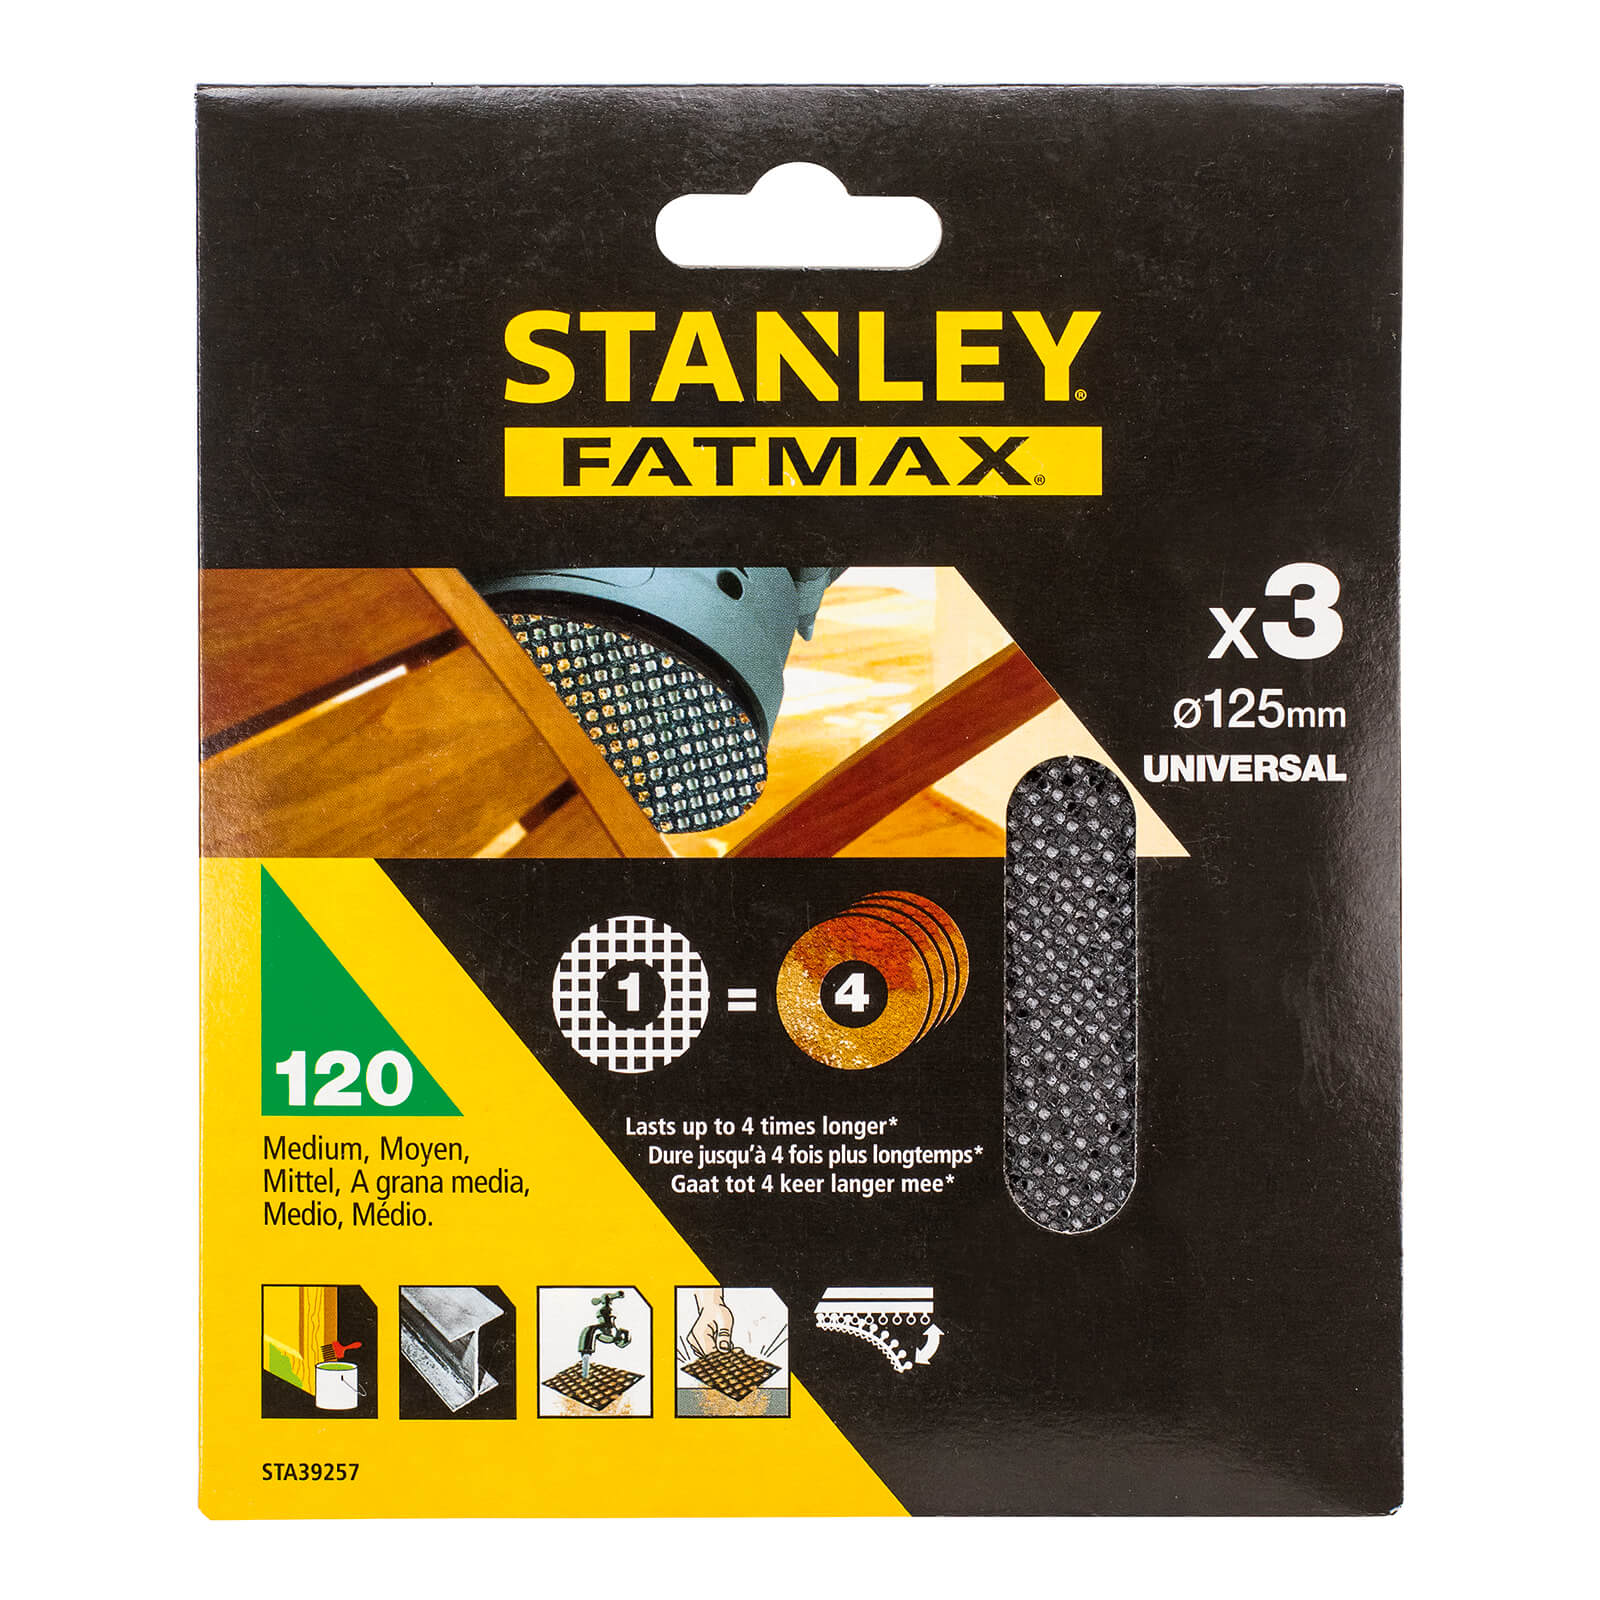 STANLEY FATMAX - 3x 120g Quick Fit Random Orbital Sanding Mesh Discs 125mm